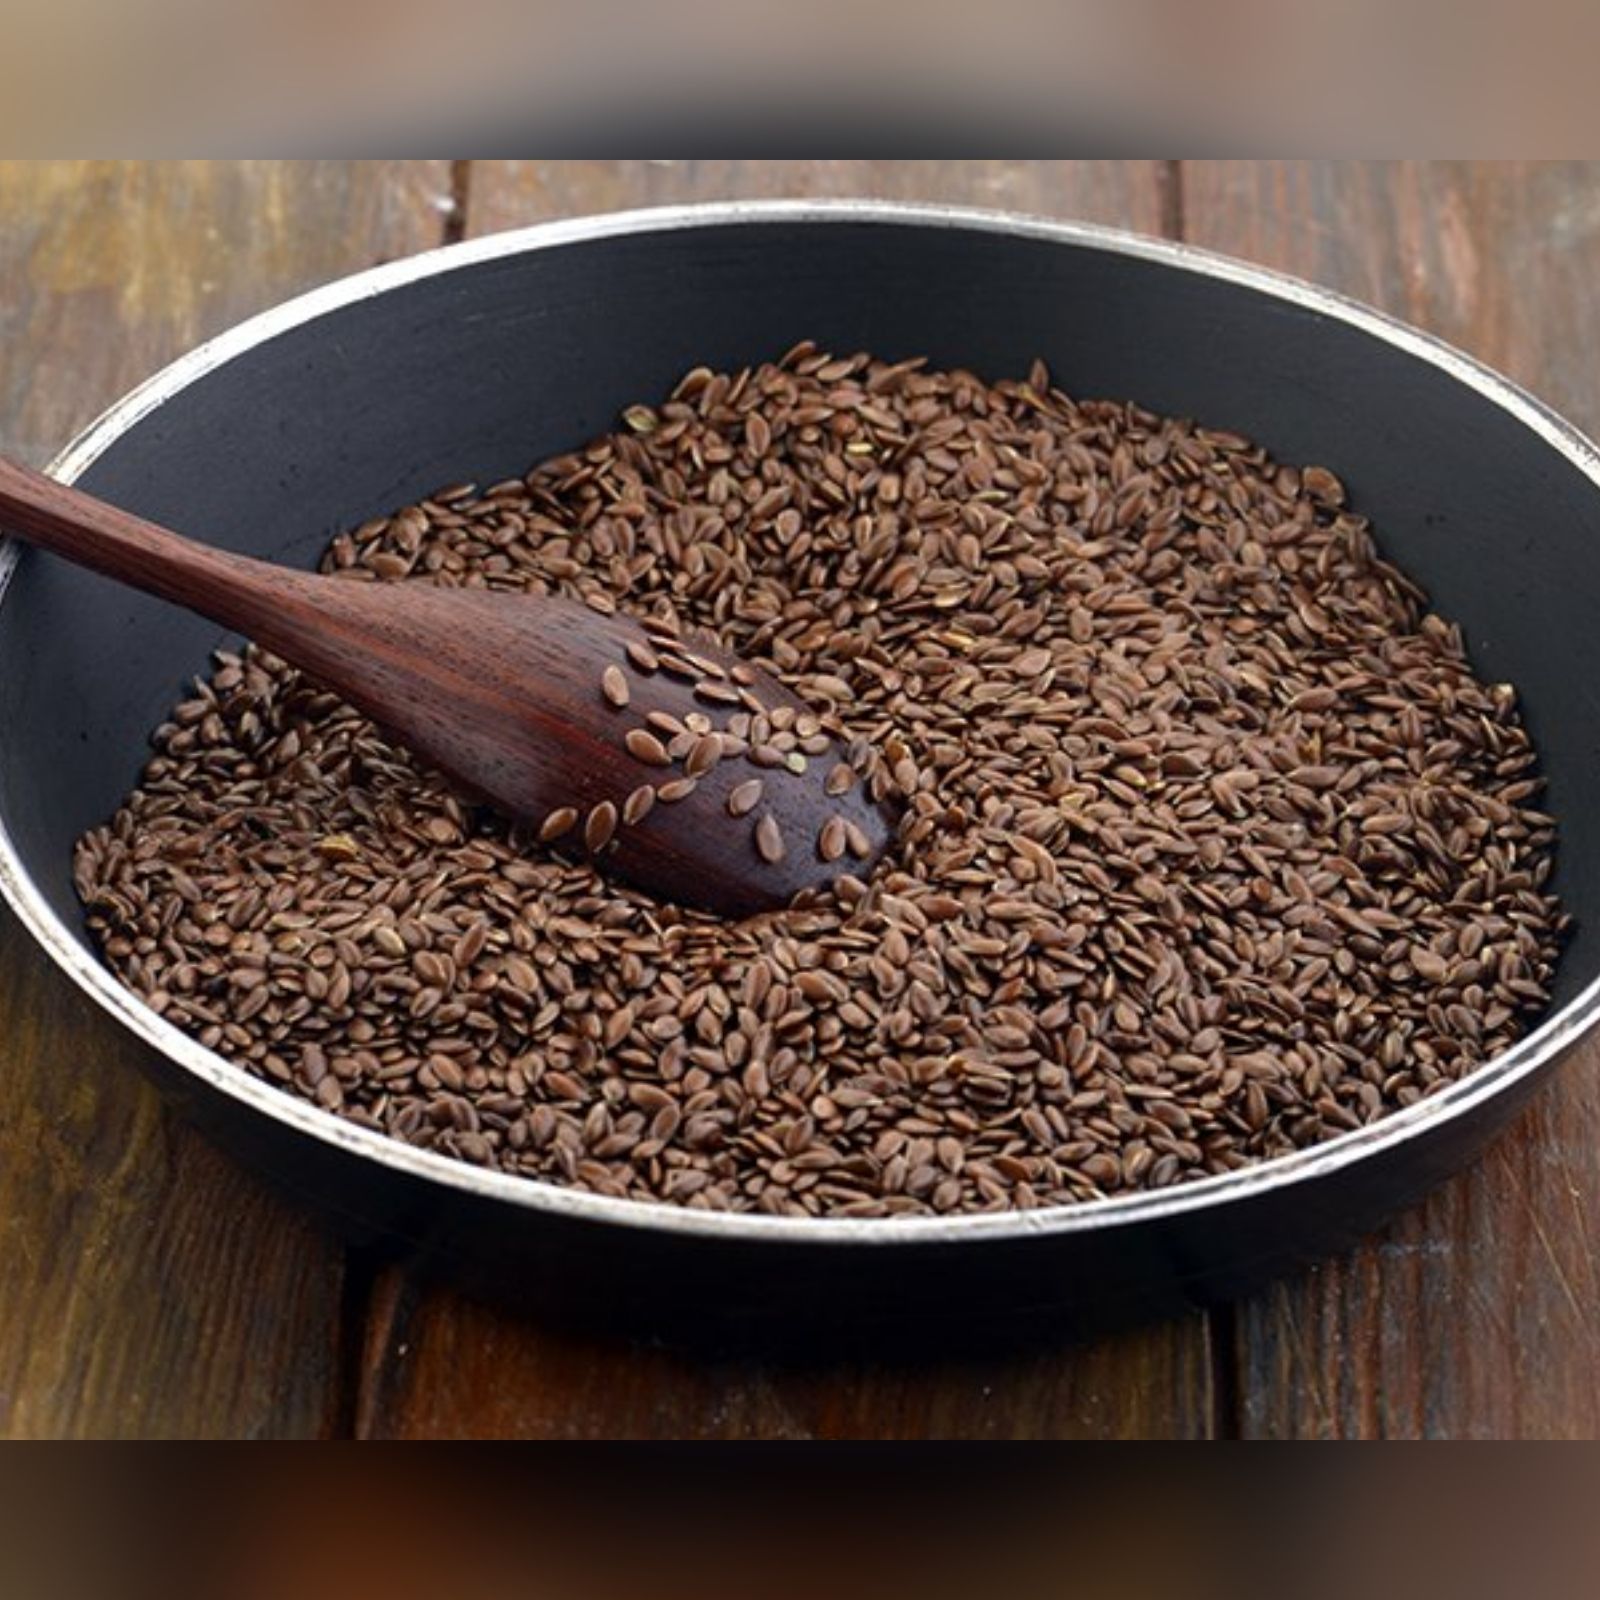 Seeds in tamil flax ஆளி விதைகளிகள்